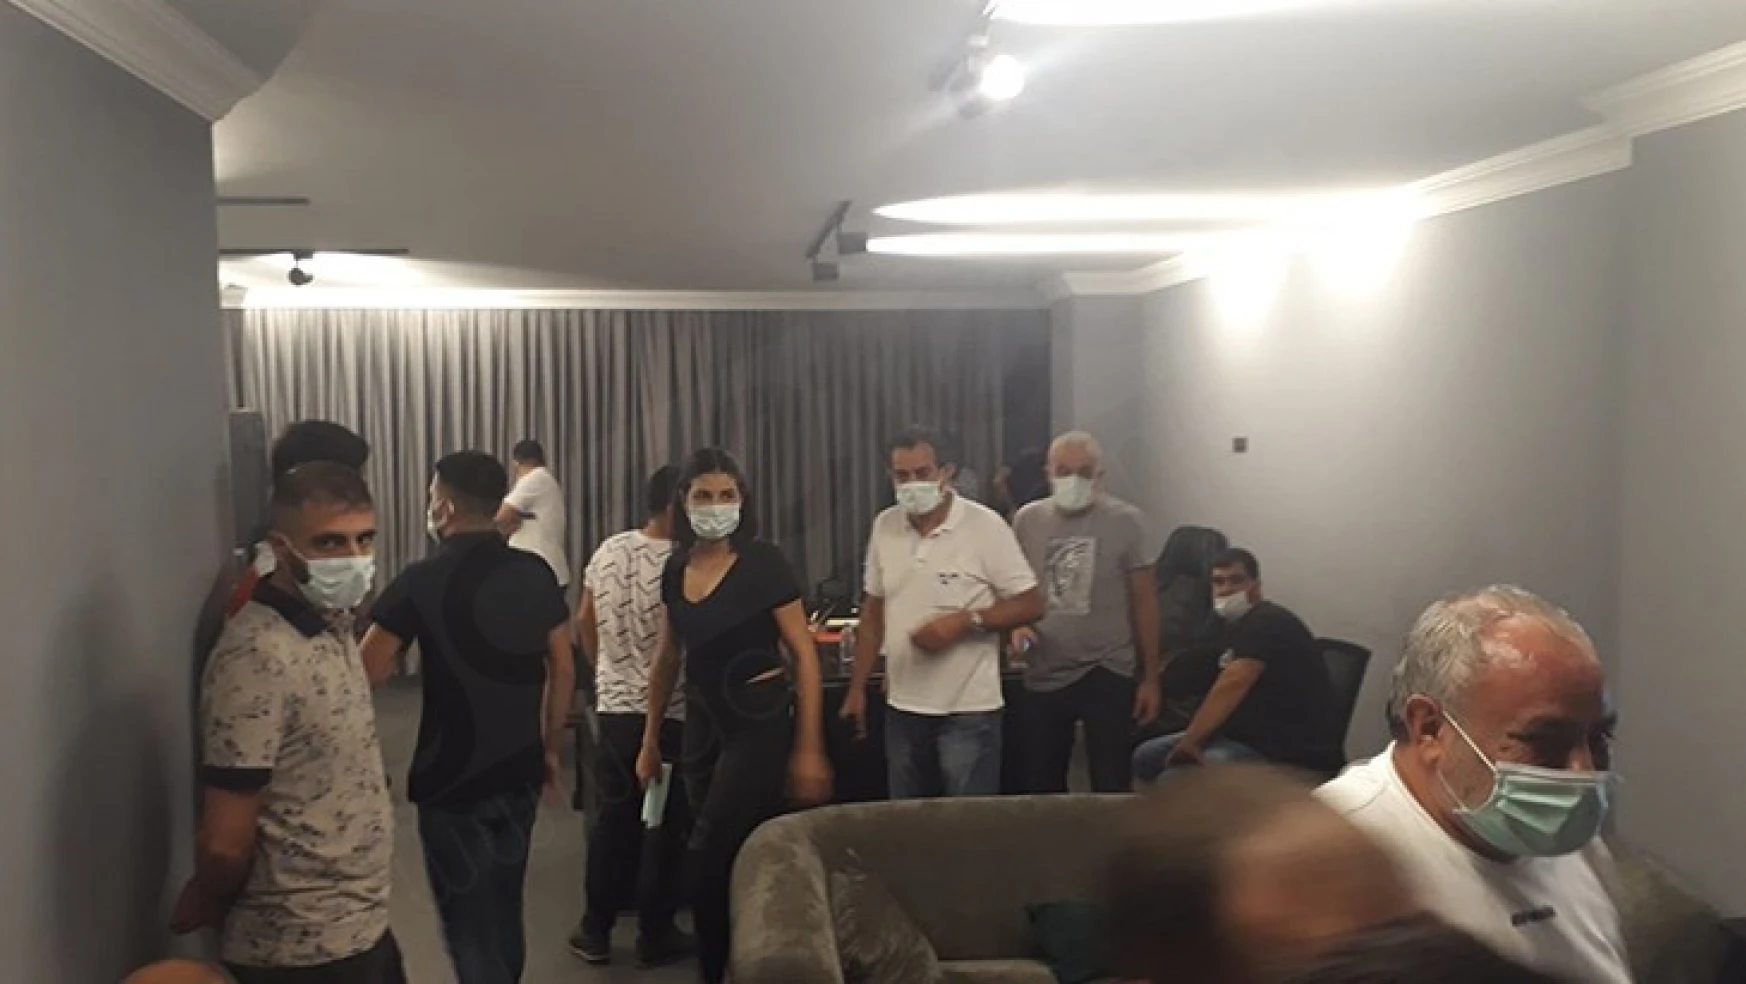 Kumarhaneye çevrilen dairedeki 21 kişiye Kovid-19 tedbirlerini ihlalden para cezası